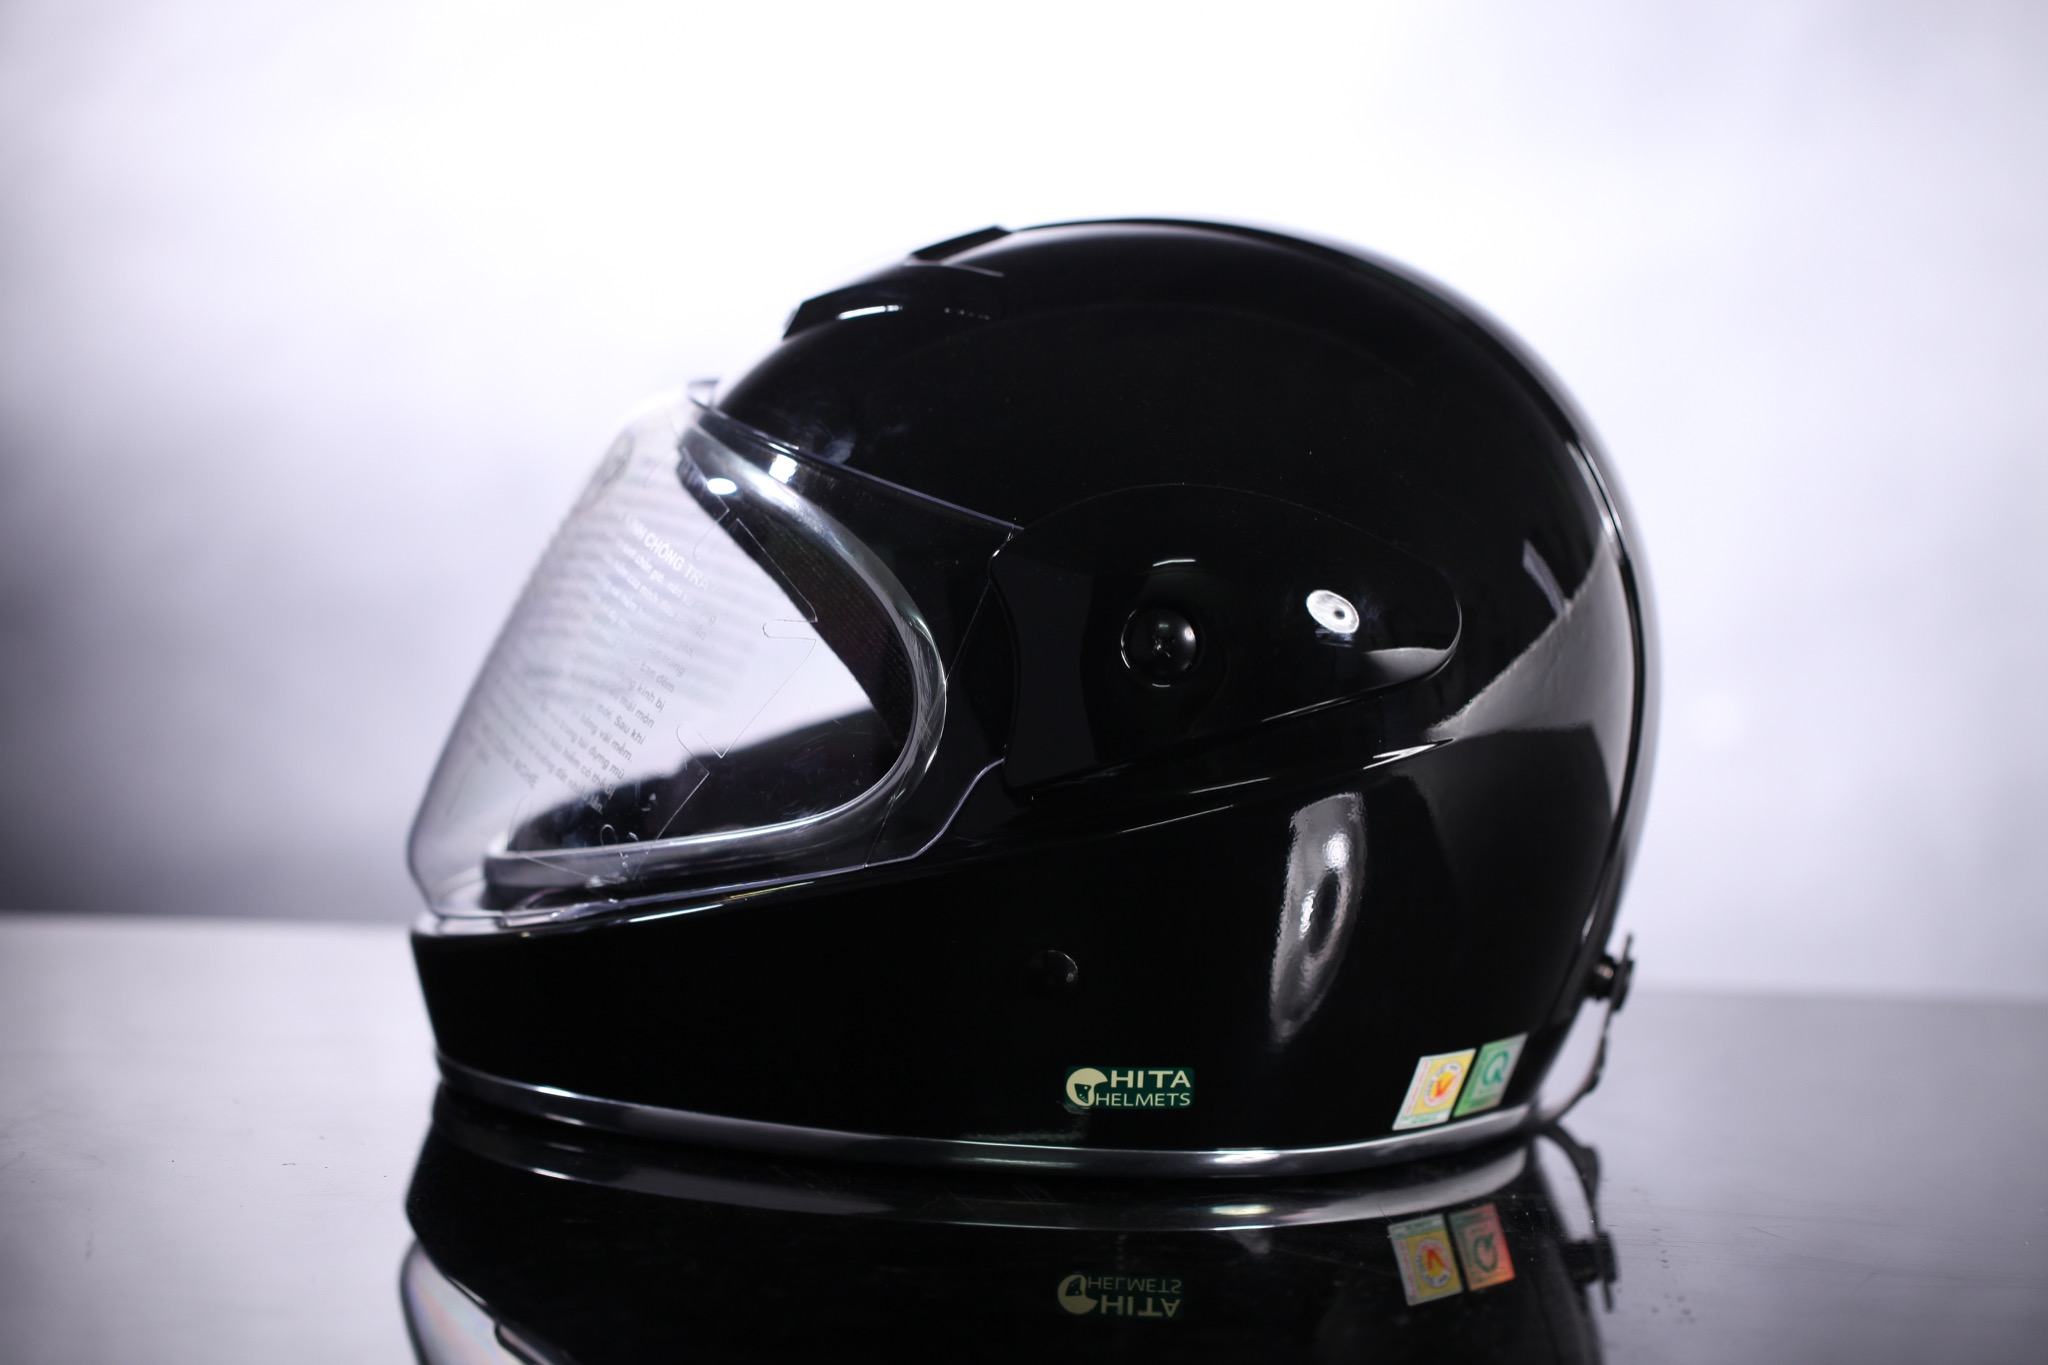 Mũ bảo hiểm Chita Fullface - CT34, màu đen sơn bóng, ron bạc - Mũ ...